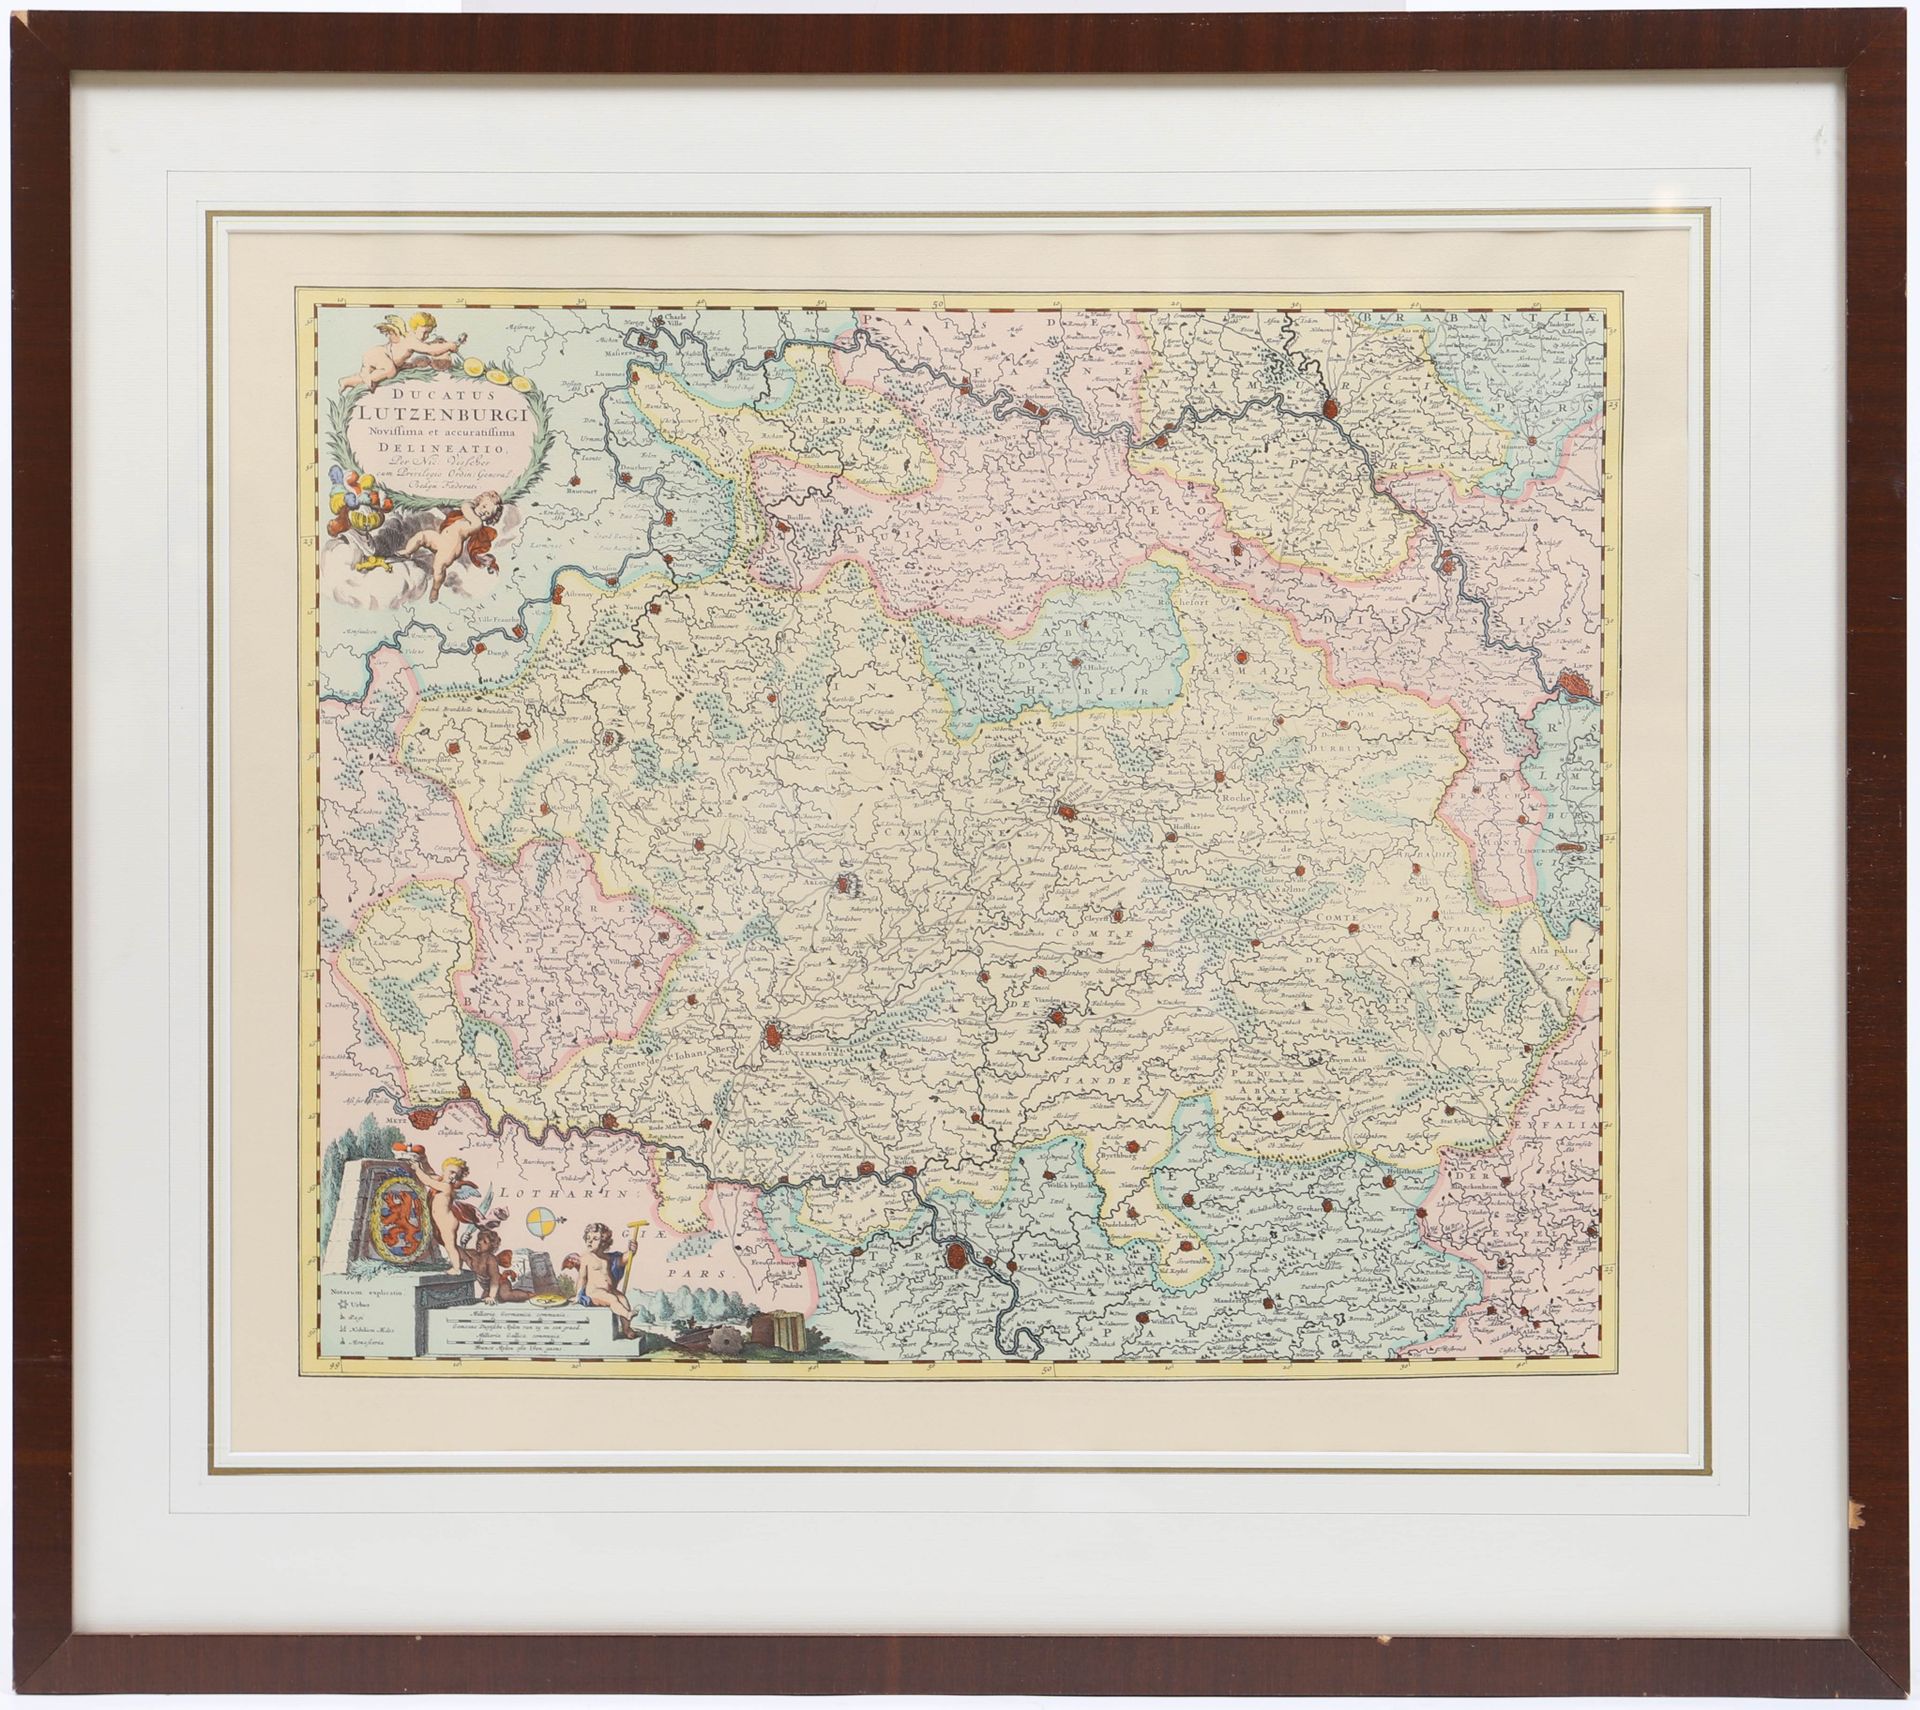 Null Mapa del Gran Ducado de Luxemburgo

Impresión en color, enmarcada bajo cris&hellip;